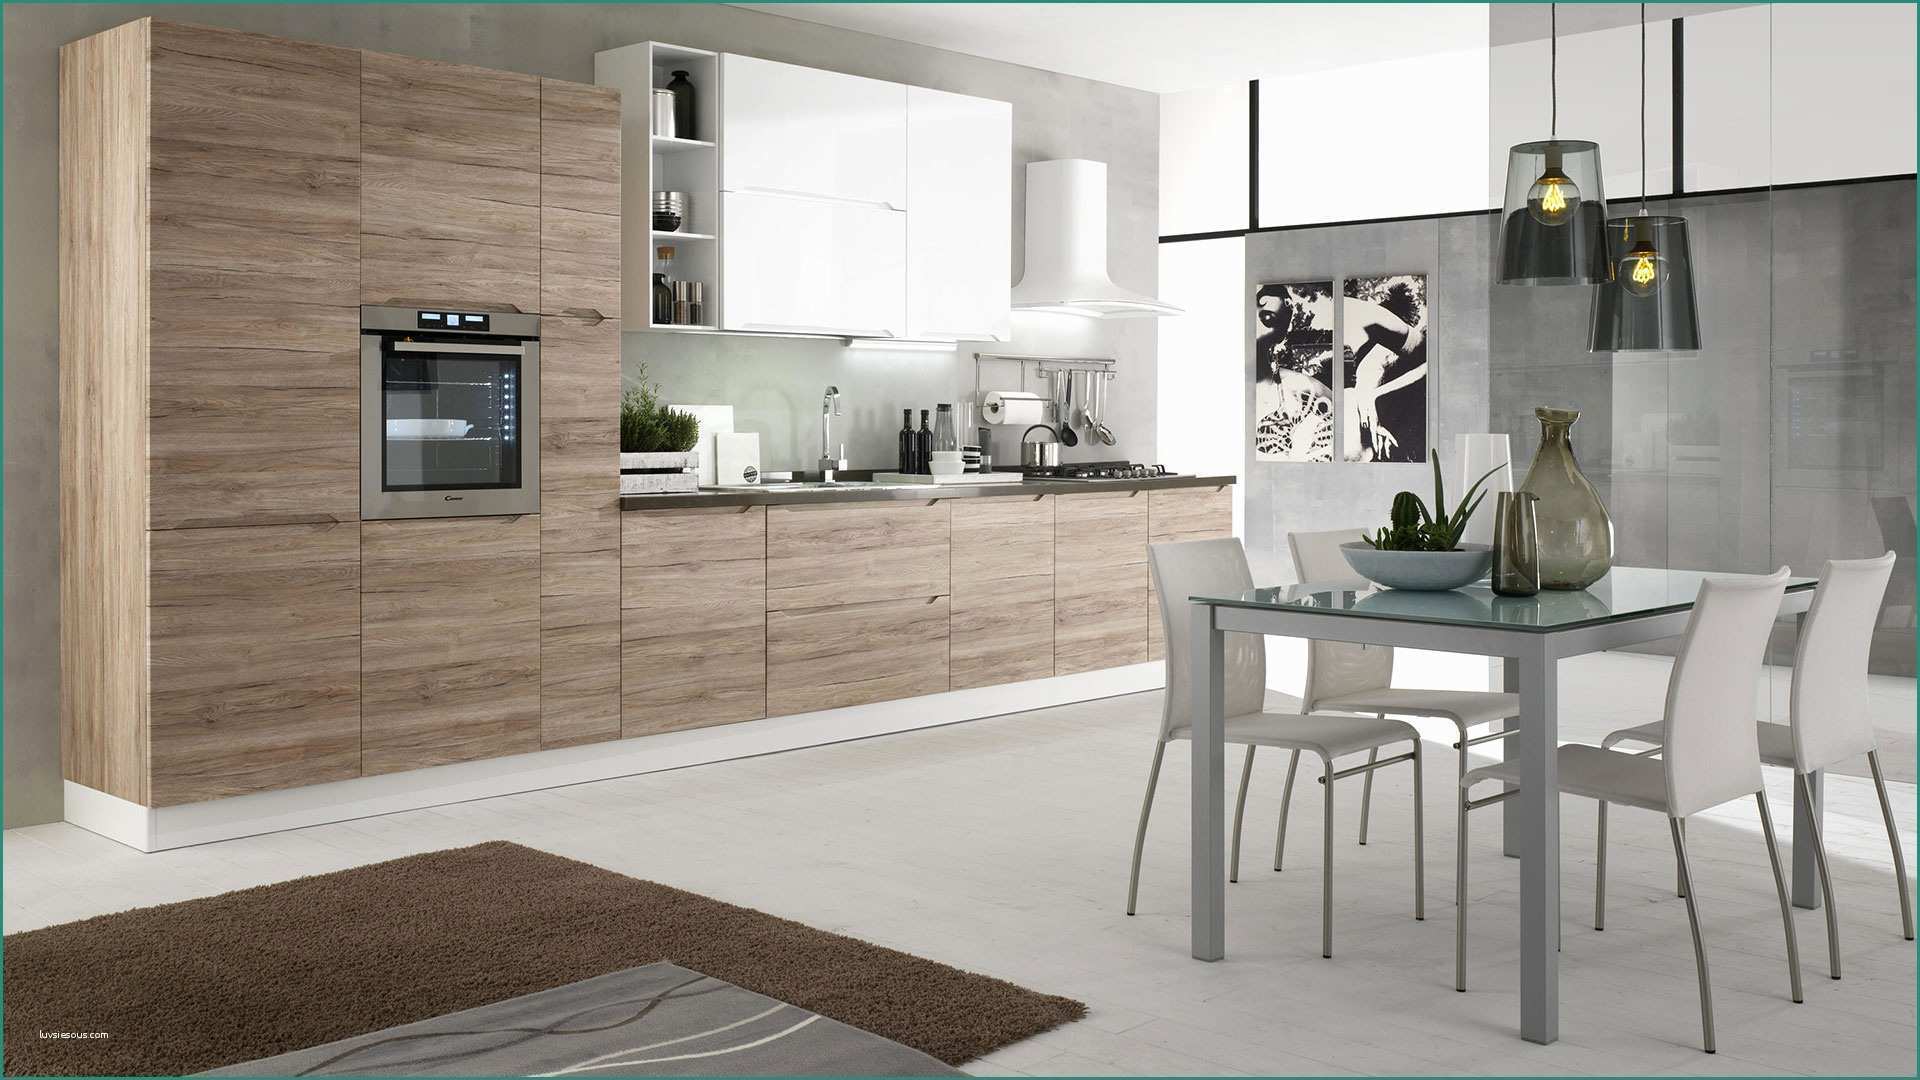 Cucina Piccola Angolare E Immagini Di Cucine Moderne Excellent soggiorno Open Space soggiorno